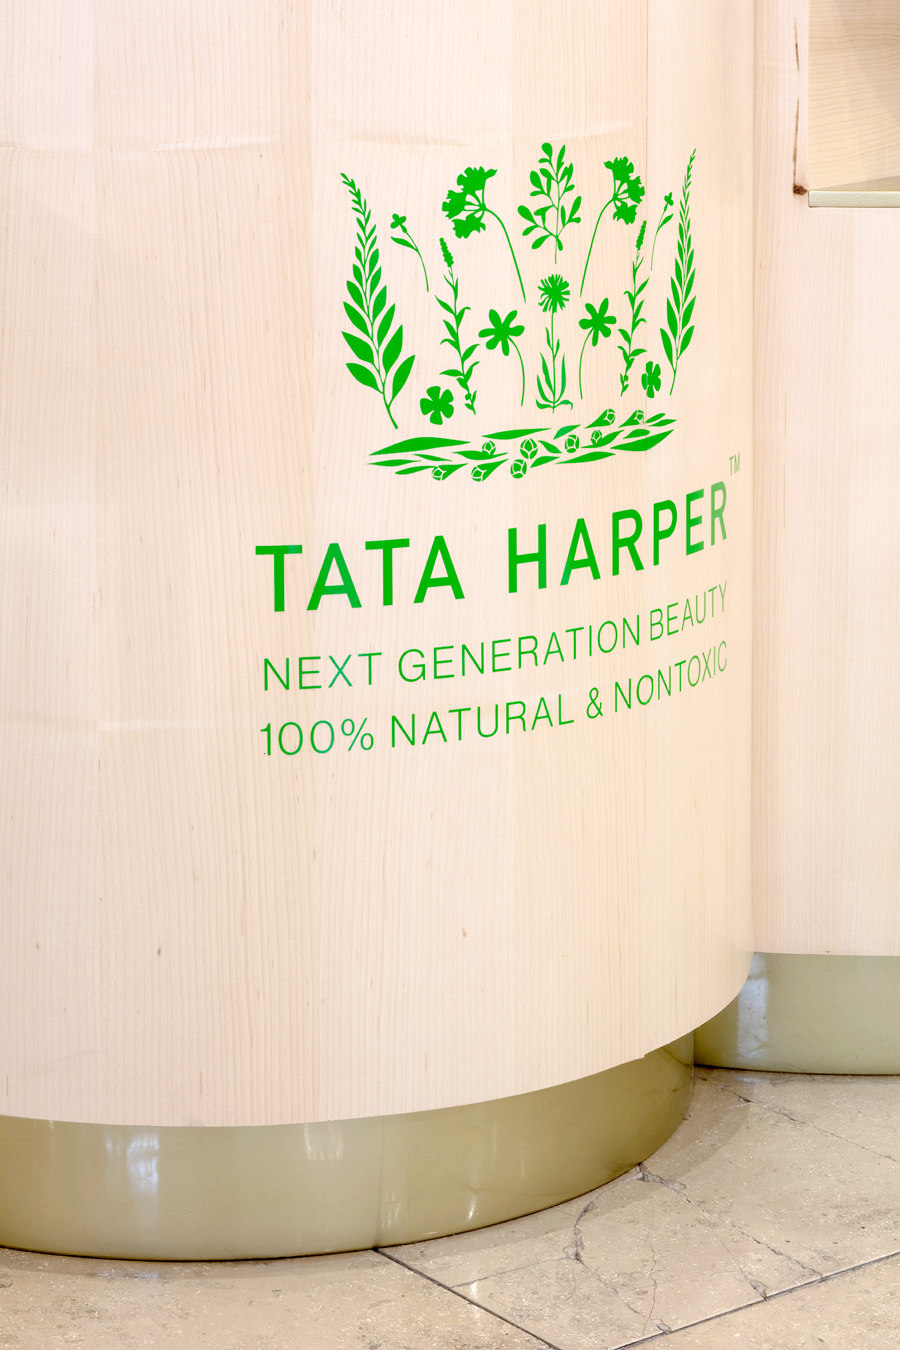 Tata Harper by FormRoom | Shop interiors